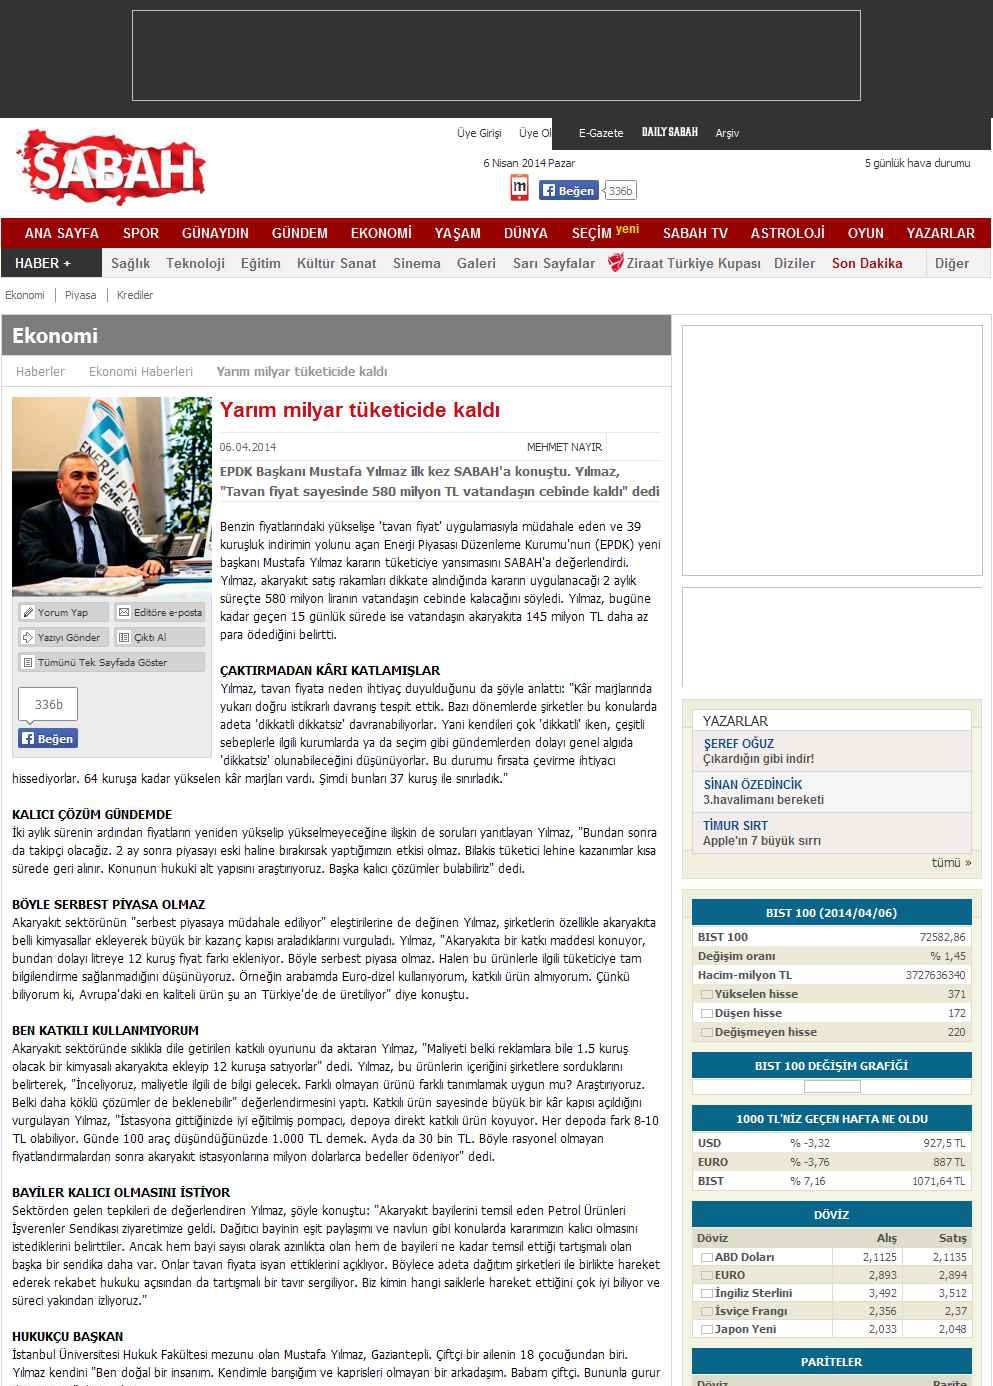 Portal Adres YARIM MILYAR TÜKETICIDE KALDI : www.sabah.com.